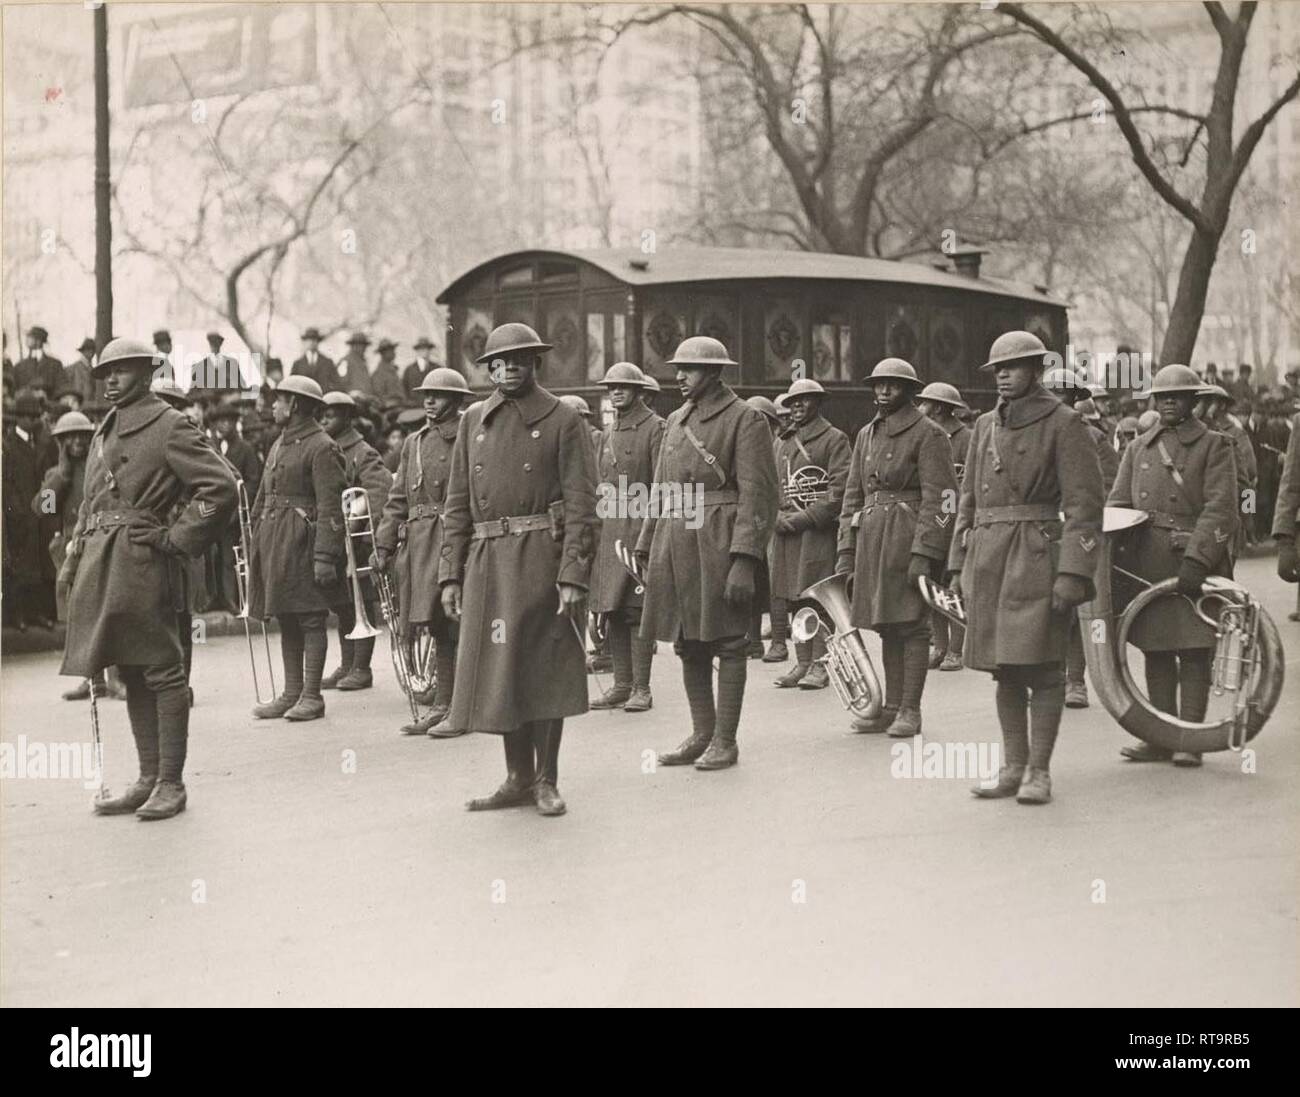 Les soldats de la 369e Régiment d'infanterie band stand au repos pendant qu'ils attendent à mars de la Cinquième Avenue à New York City le 17 février 1919 lors d'un défilé tenu à saluer la Garde Nationale de New York accueil. Plus de 2 000 soldats ont pris part au défilé de la Cinquième Avenue. Les soldats ont marché 11 kilomètres du centre-ville de Manhattan à Harlem. Le groupe était dirigé par le Lieutenant James Reese musicien noté ' Jimmie" l'Europe, vu au centre portant des lunettes. ( Archives nationales) Banque D'Images